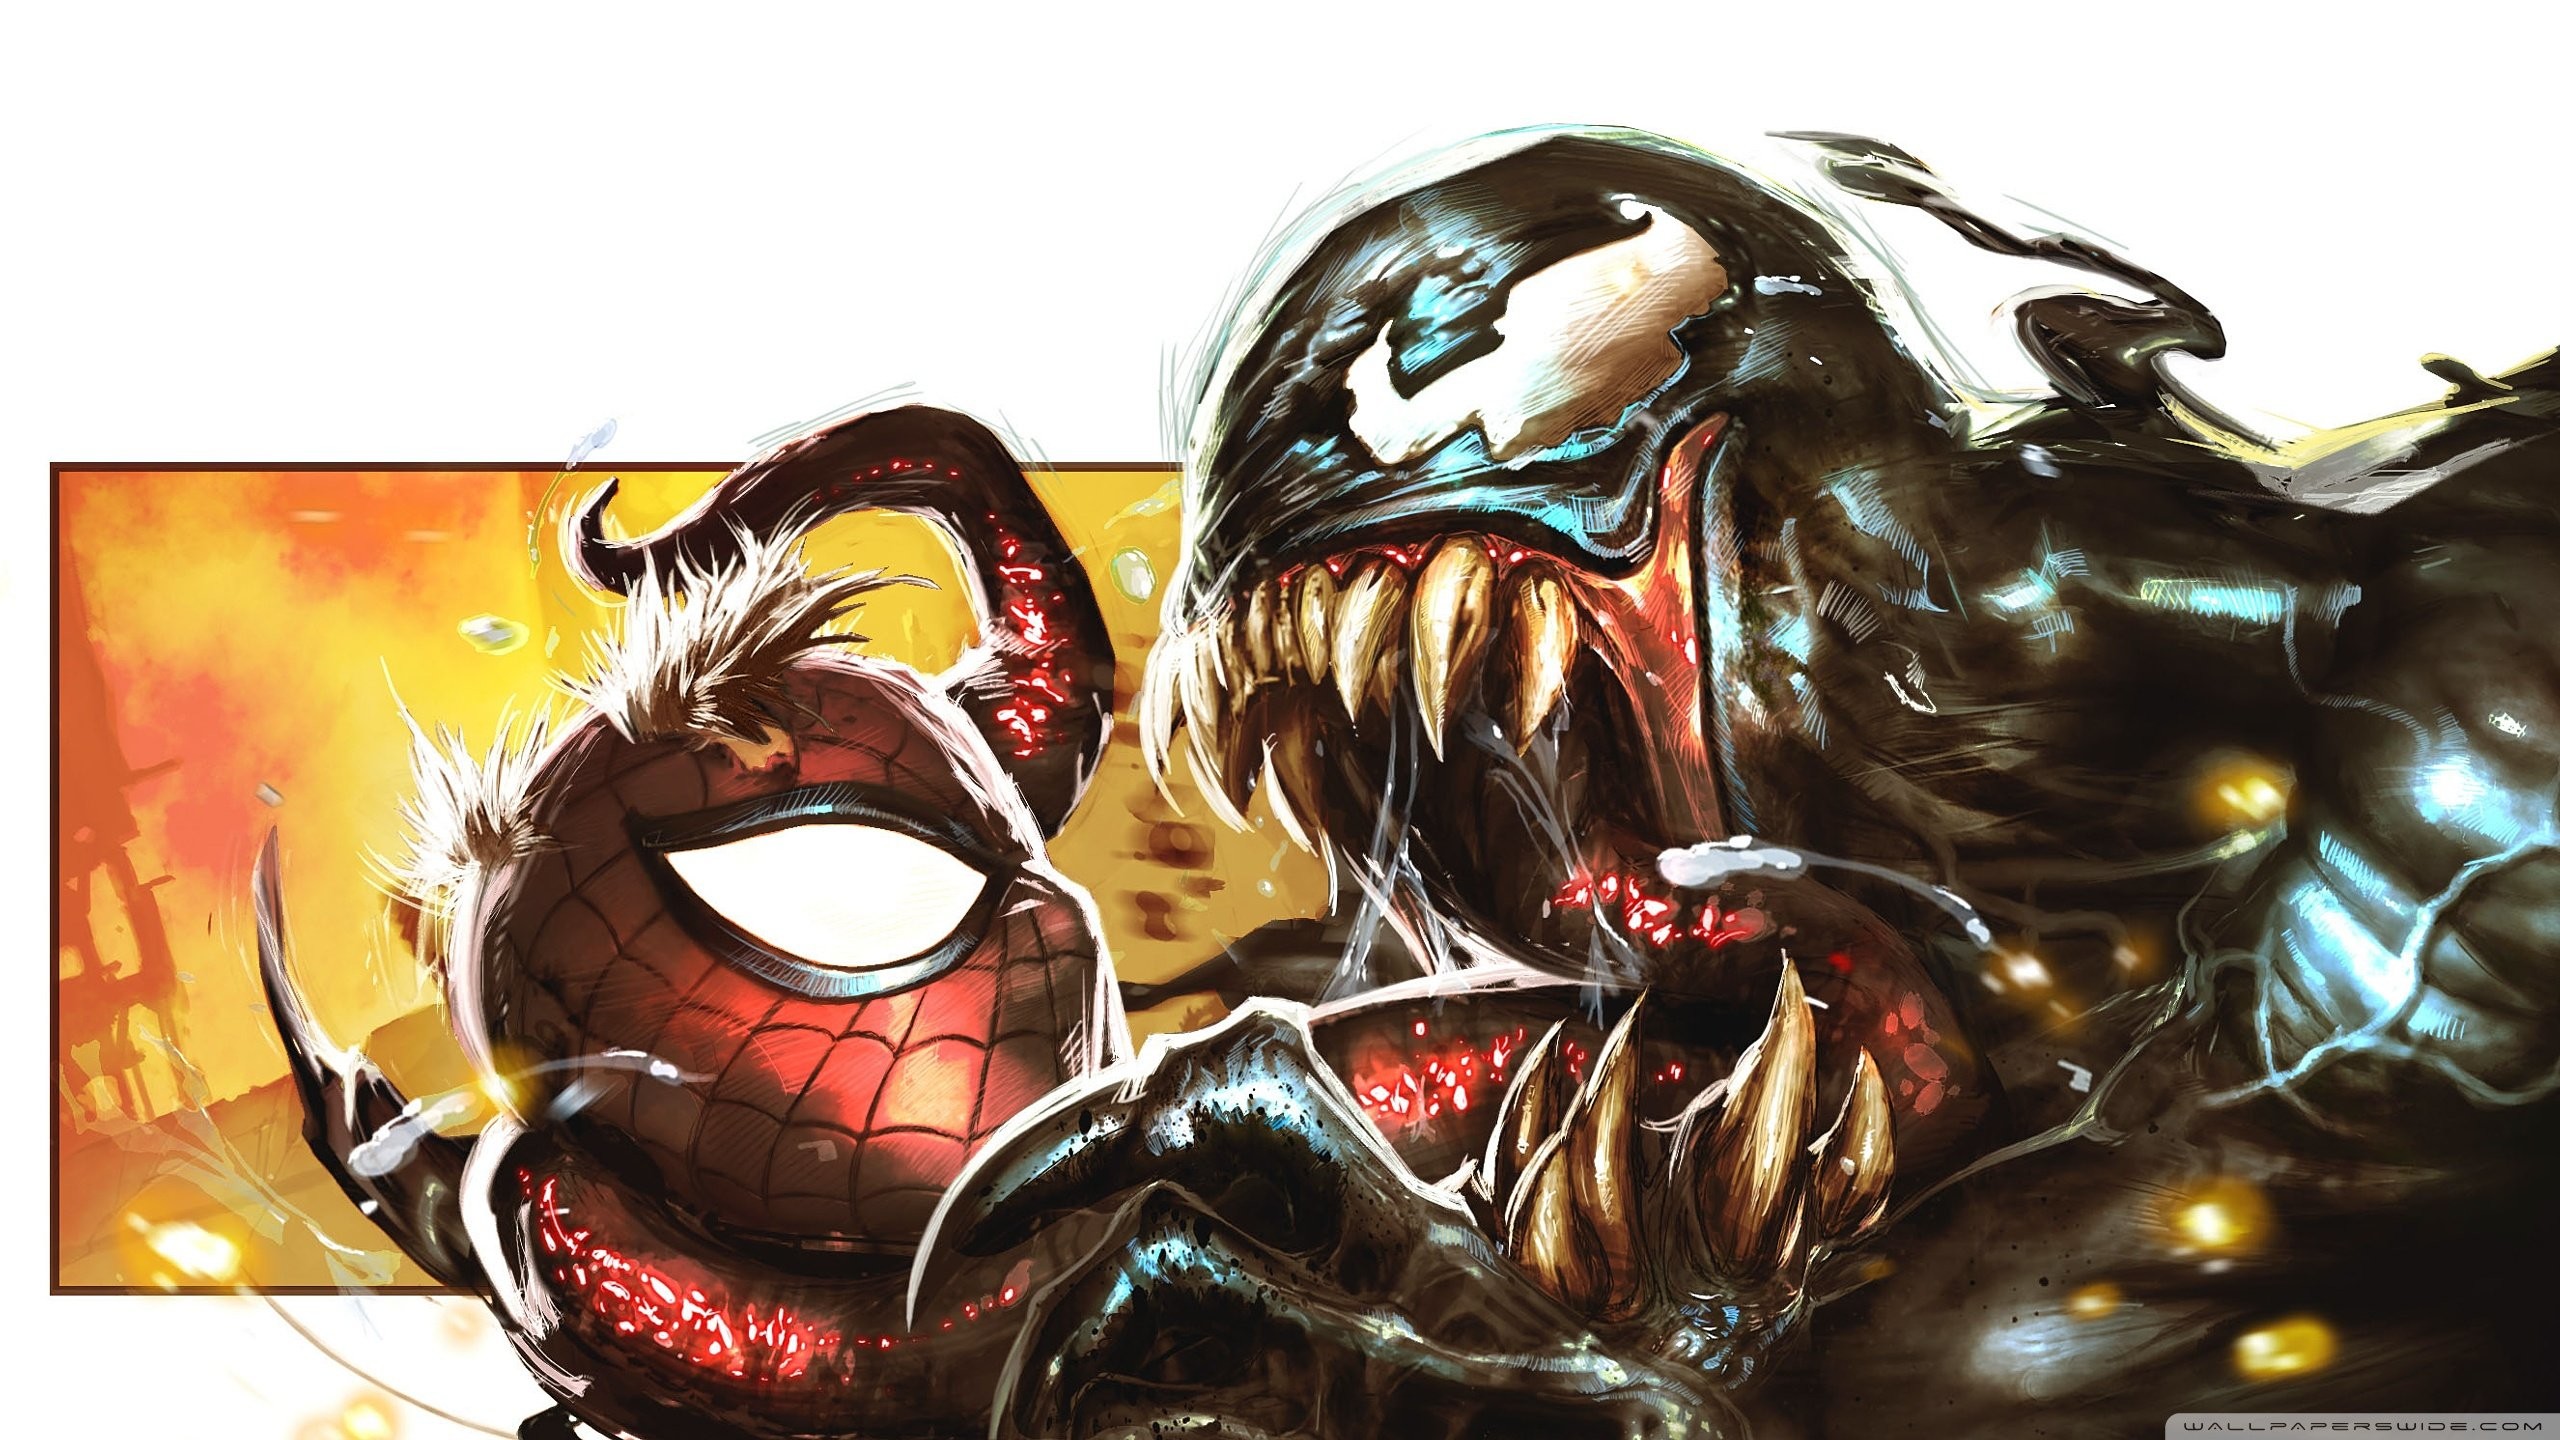 2560x1440 Spiderman vs venom vs carnage wallpaper - photo#16